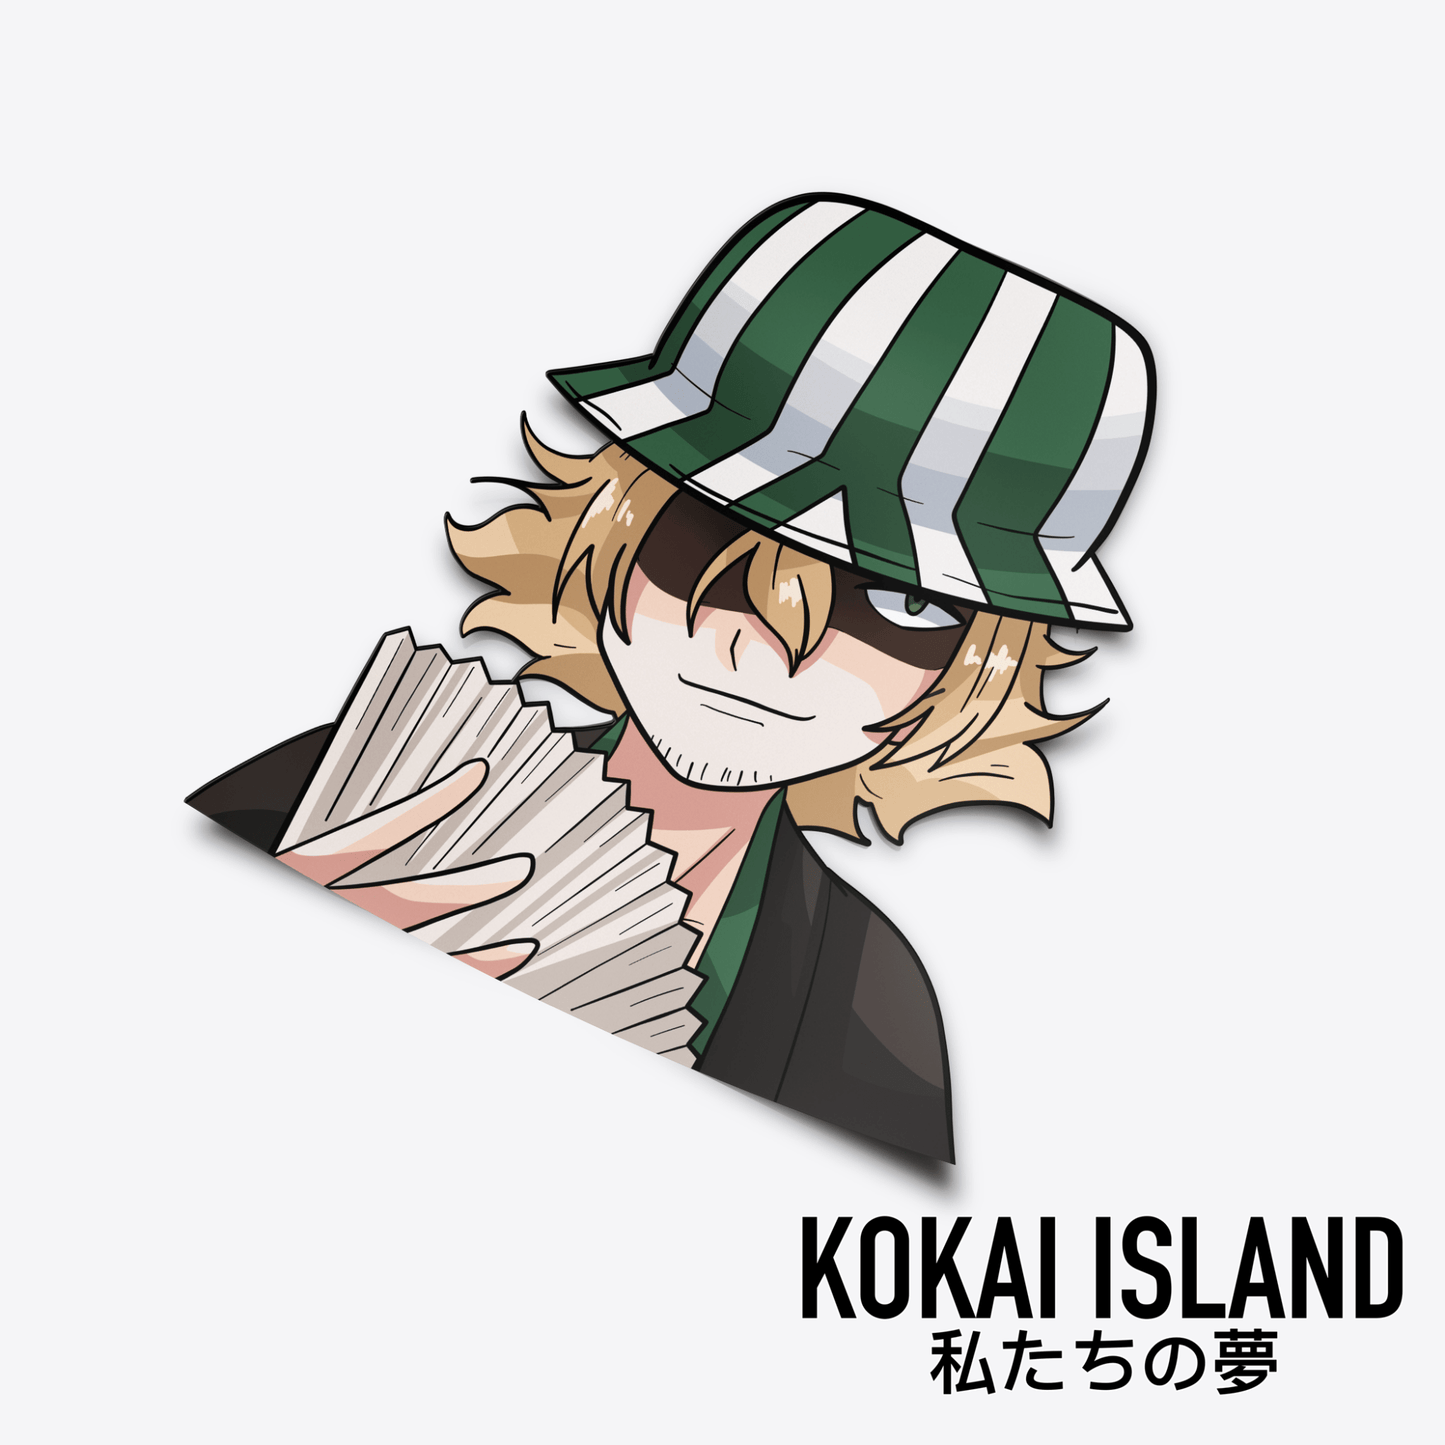 Cool Bucket Hat Guy DecalDecalKokai Island